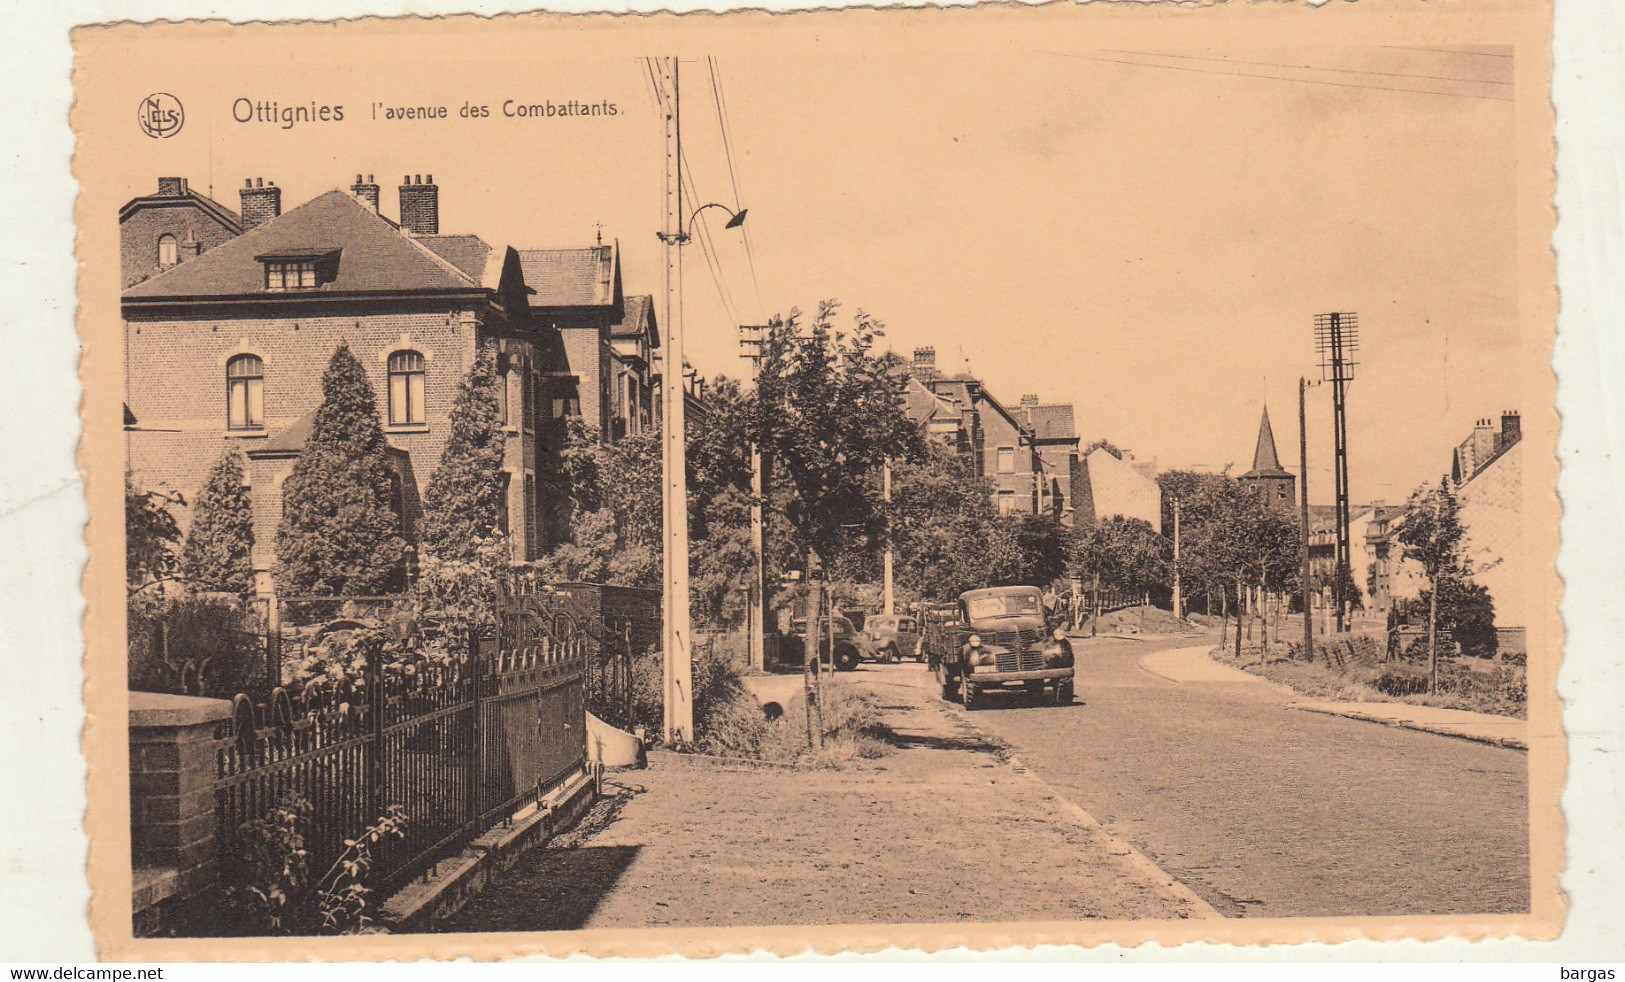 Carte Postale Ottignies L'avenue Des Combattants - Ottignies-Louvain-la-Neuve